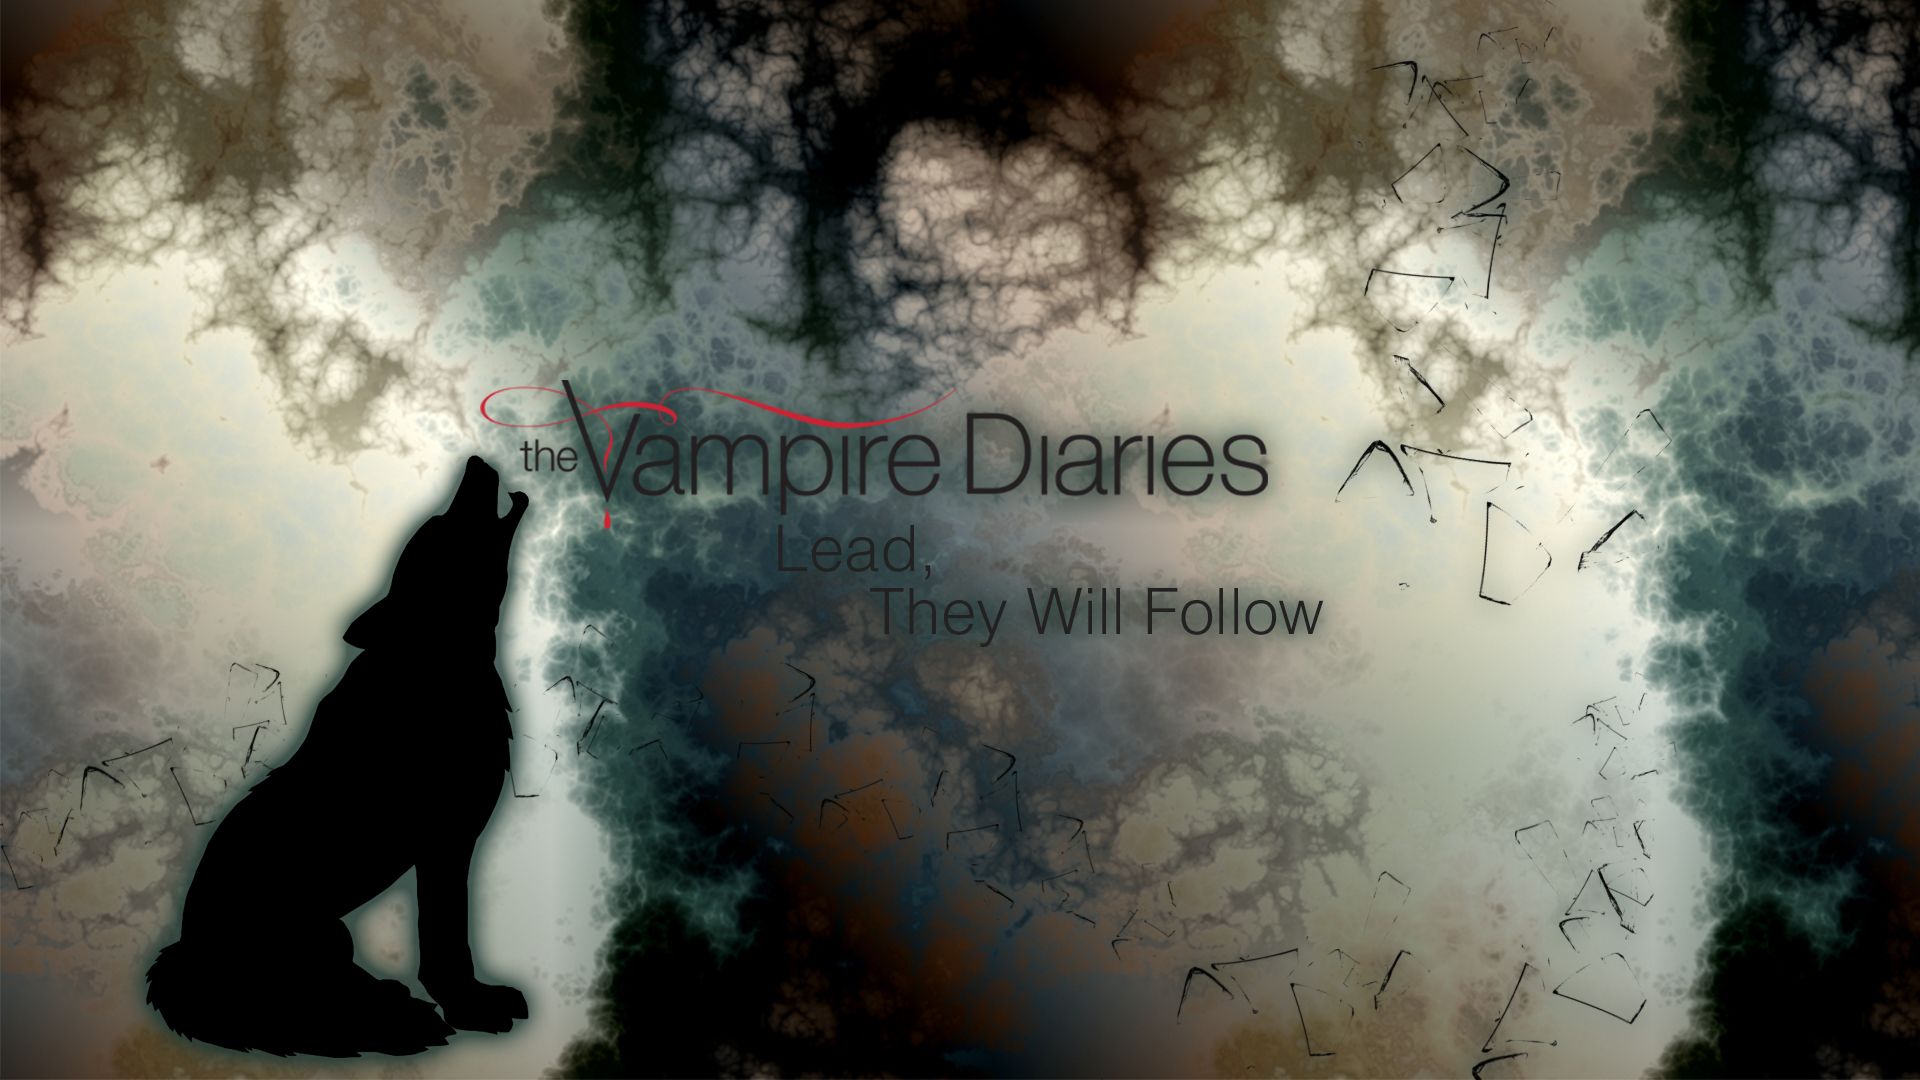 The Vampire Diaries Wallpaper Series Vampire Diaries Wallpaper